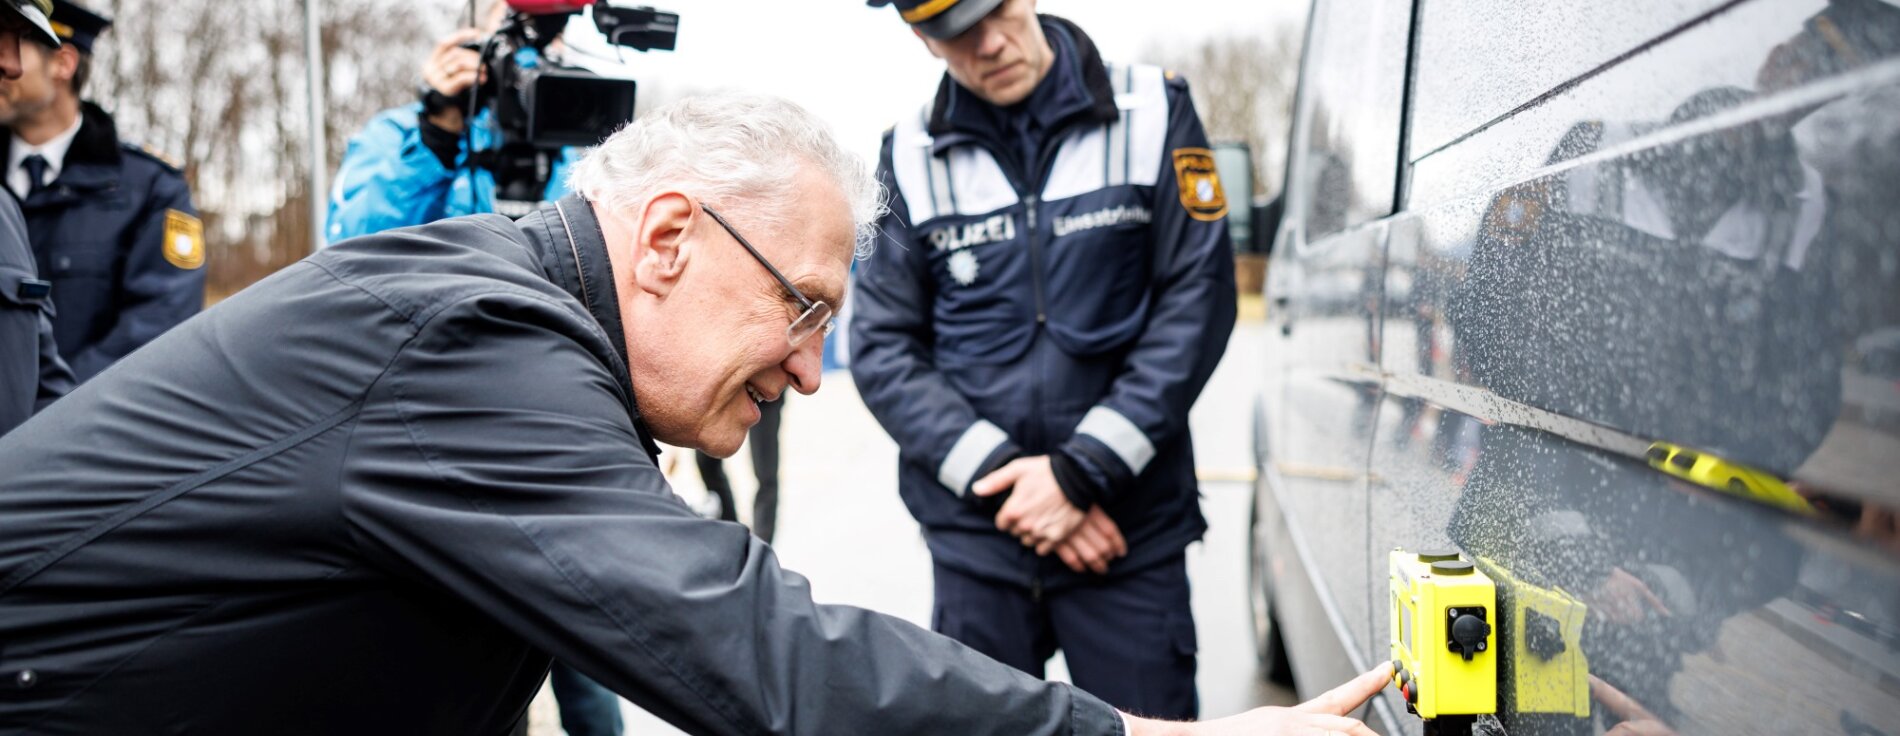 Herrmann testet gelbes elektronisches Gerät an einem Kastenwagen